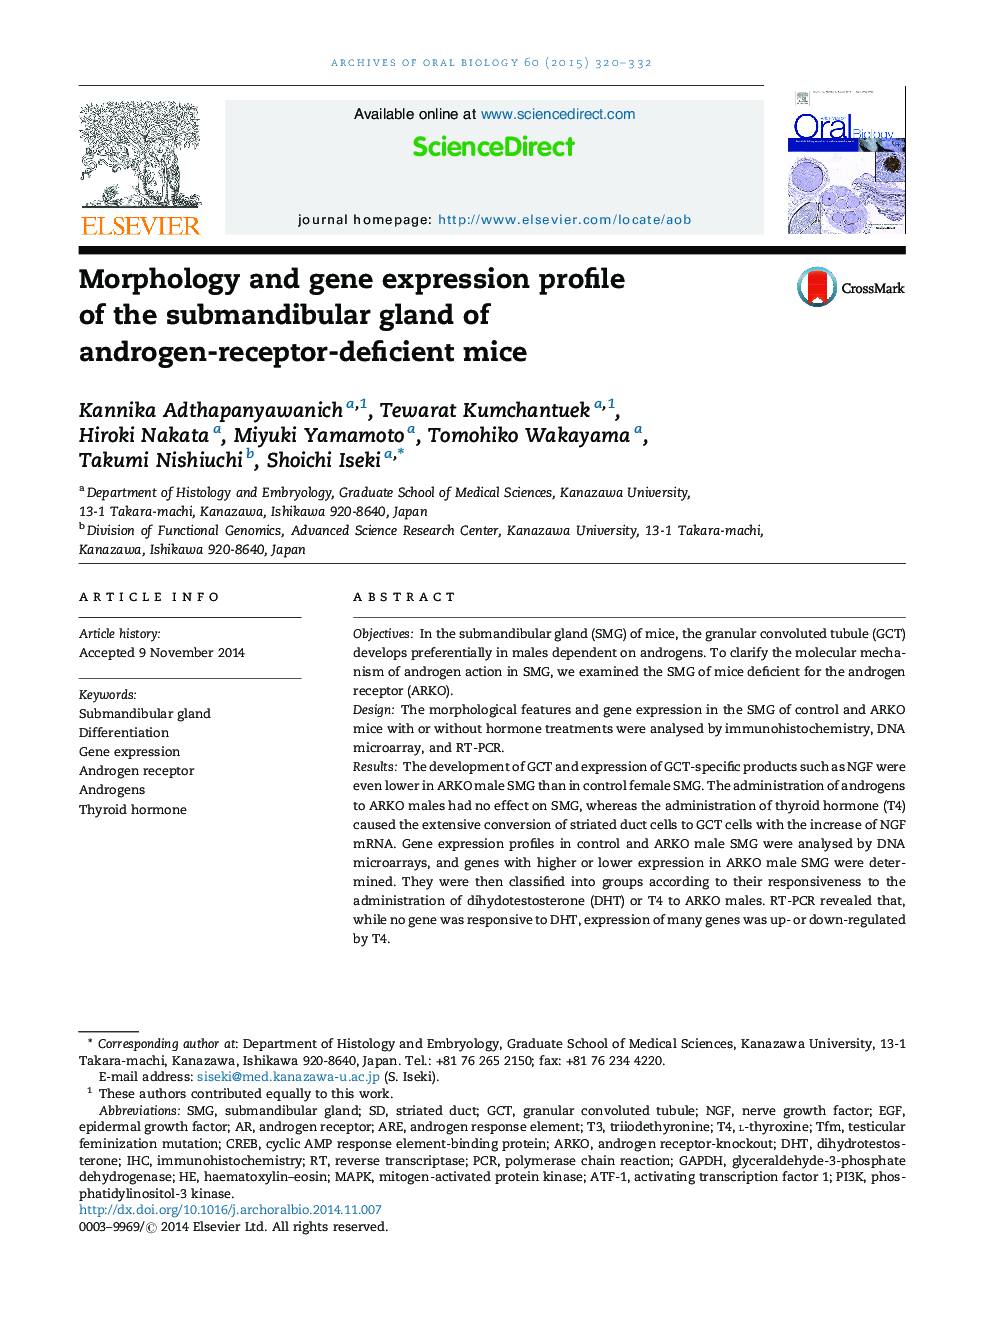 مورفولوژی و بیان ژن غدد غده هیپوفیز غده هیپوفیز موش های کمبود آندروژن 